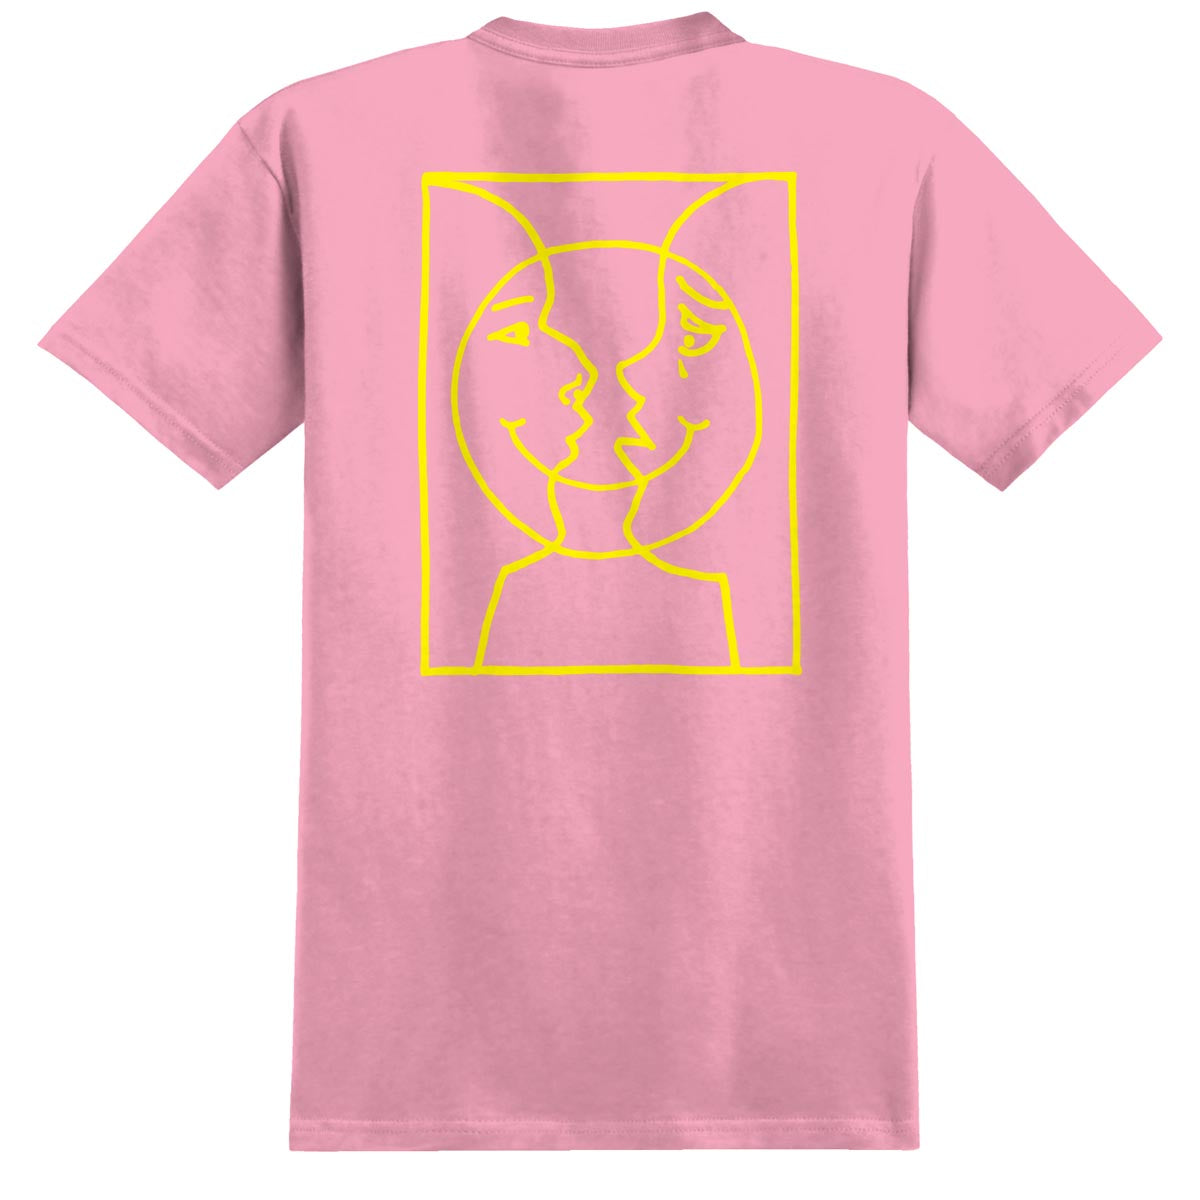 Krooked Moonsmile Raw T-Shirt - Light Pink/Yellow image 1